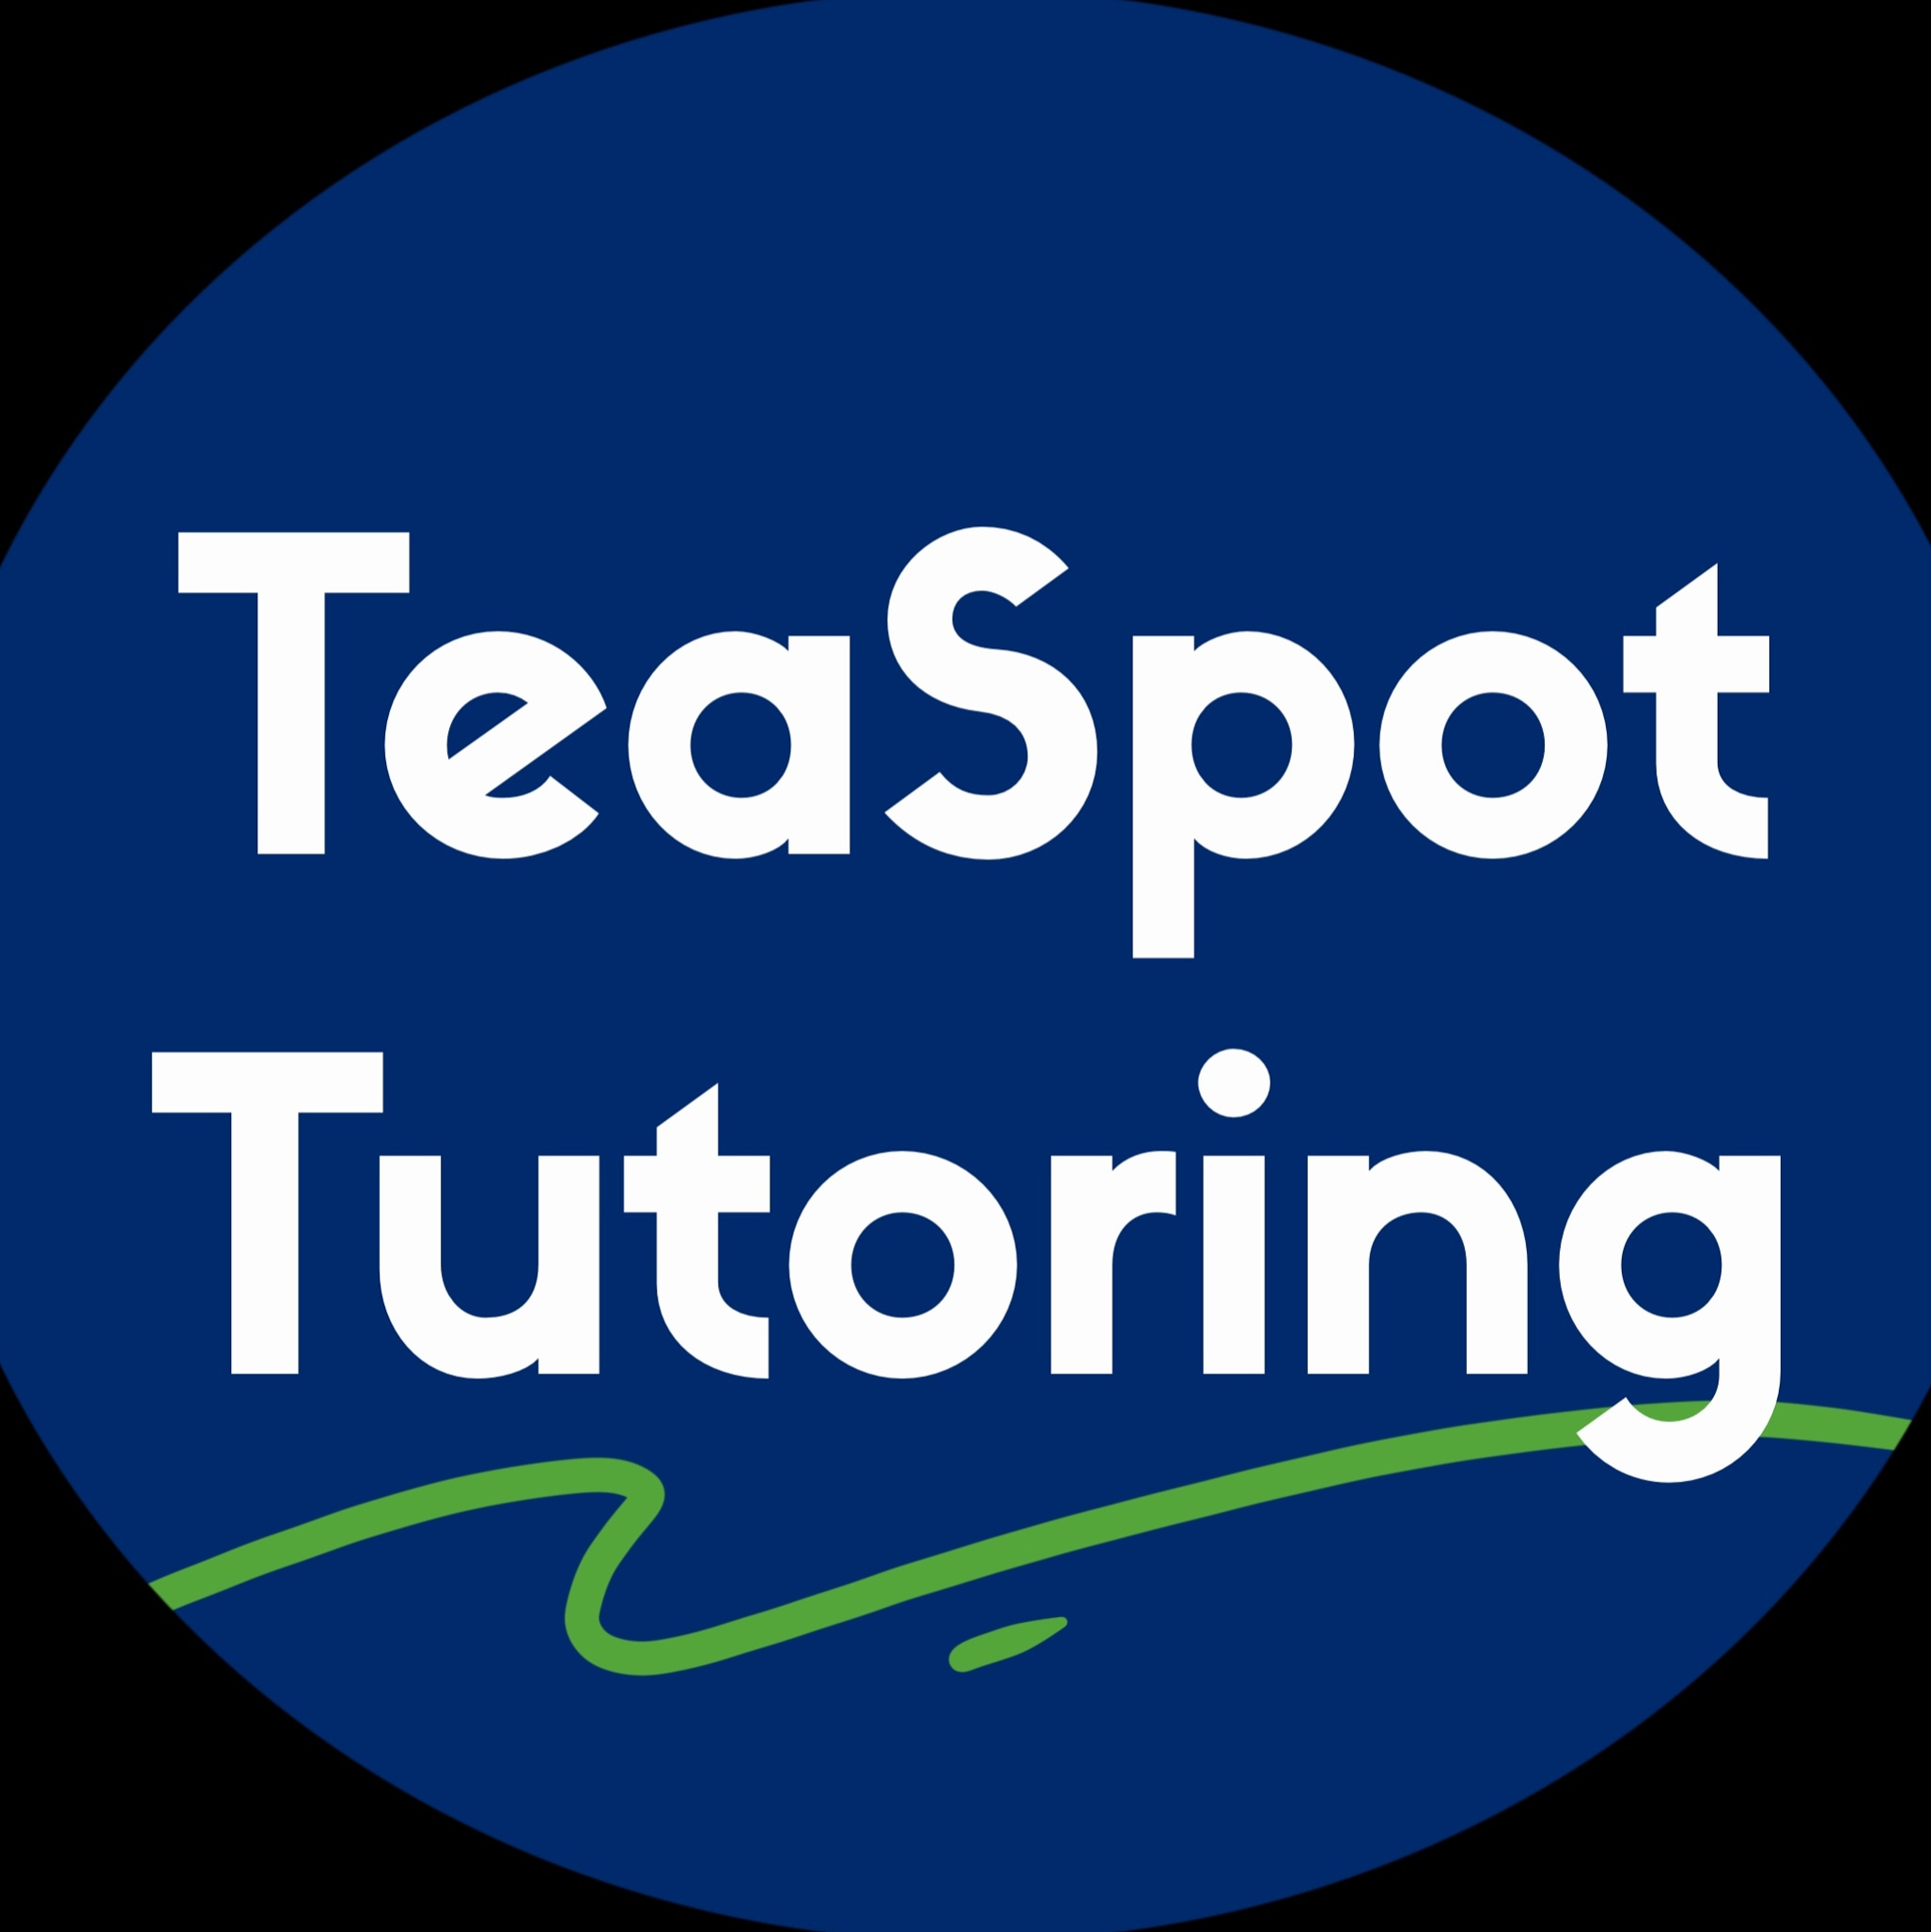 TeaSpot Learning Center logo